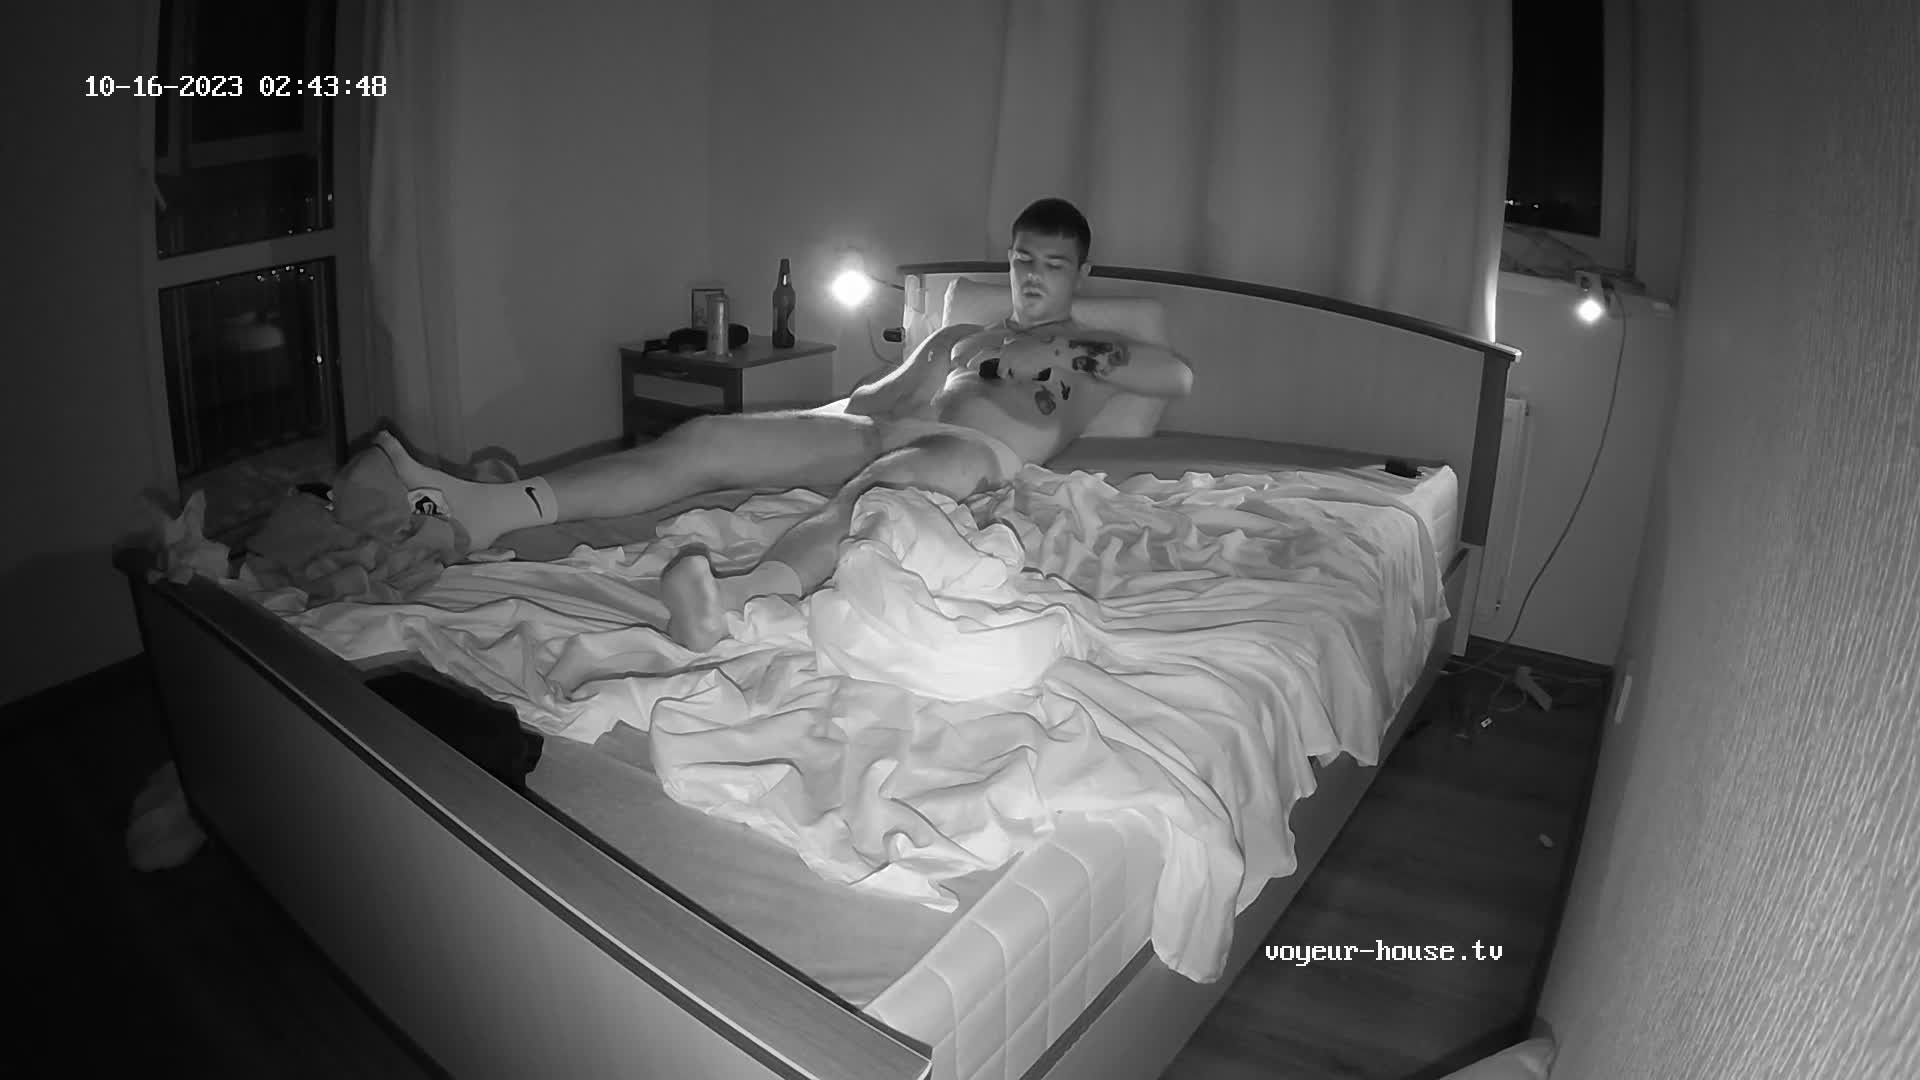 Artem jerking off in the bedroom 16 Oct 2023